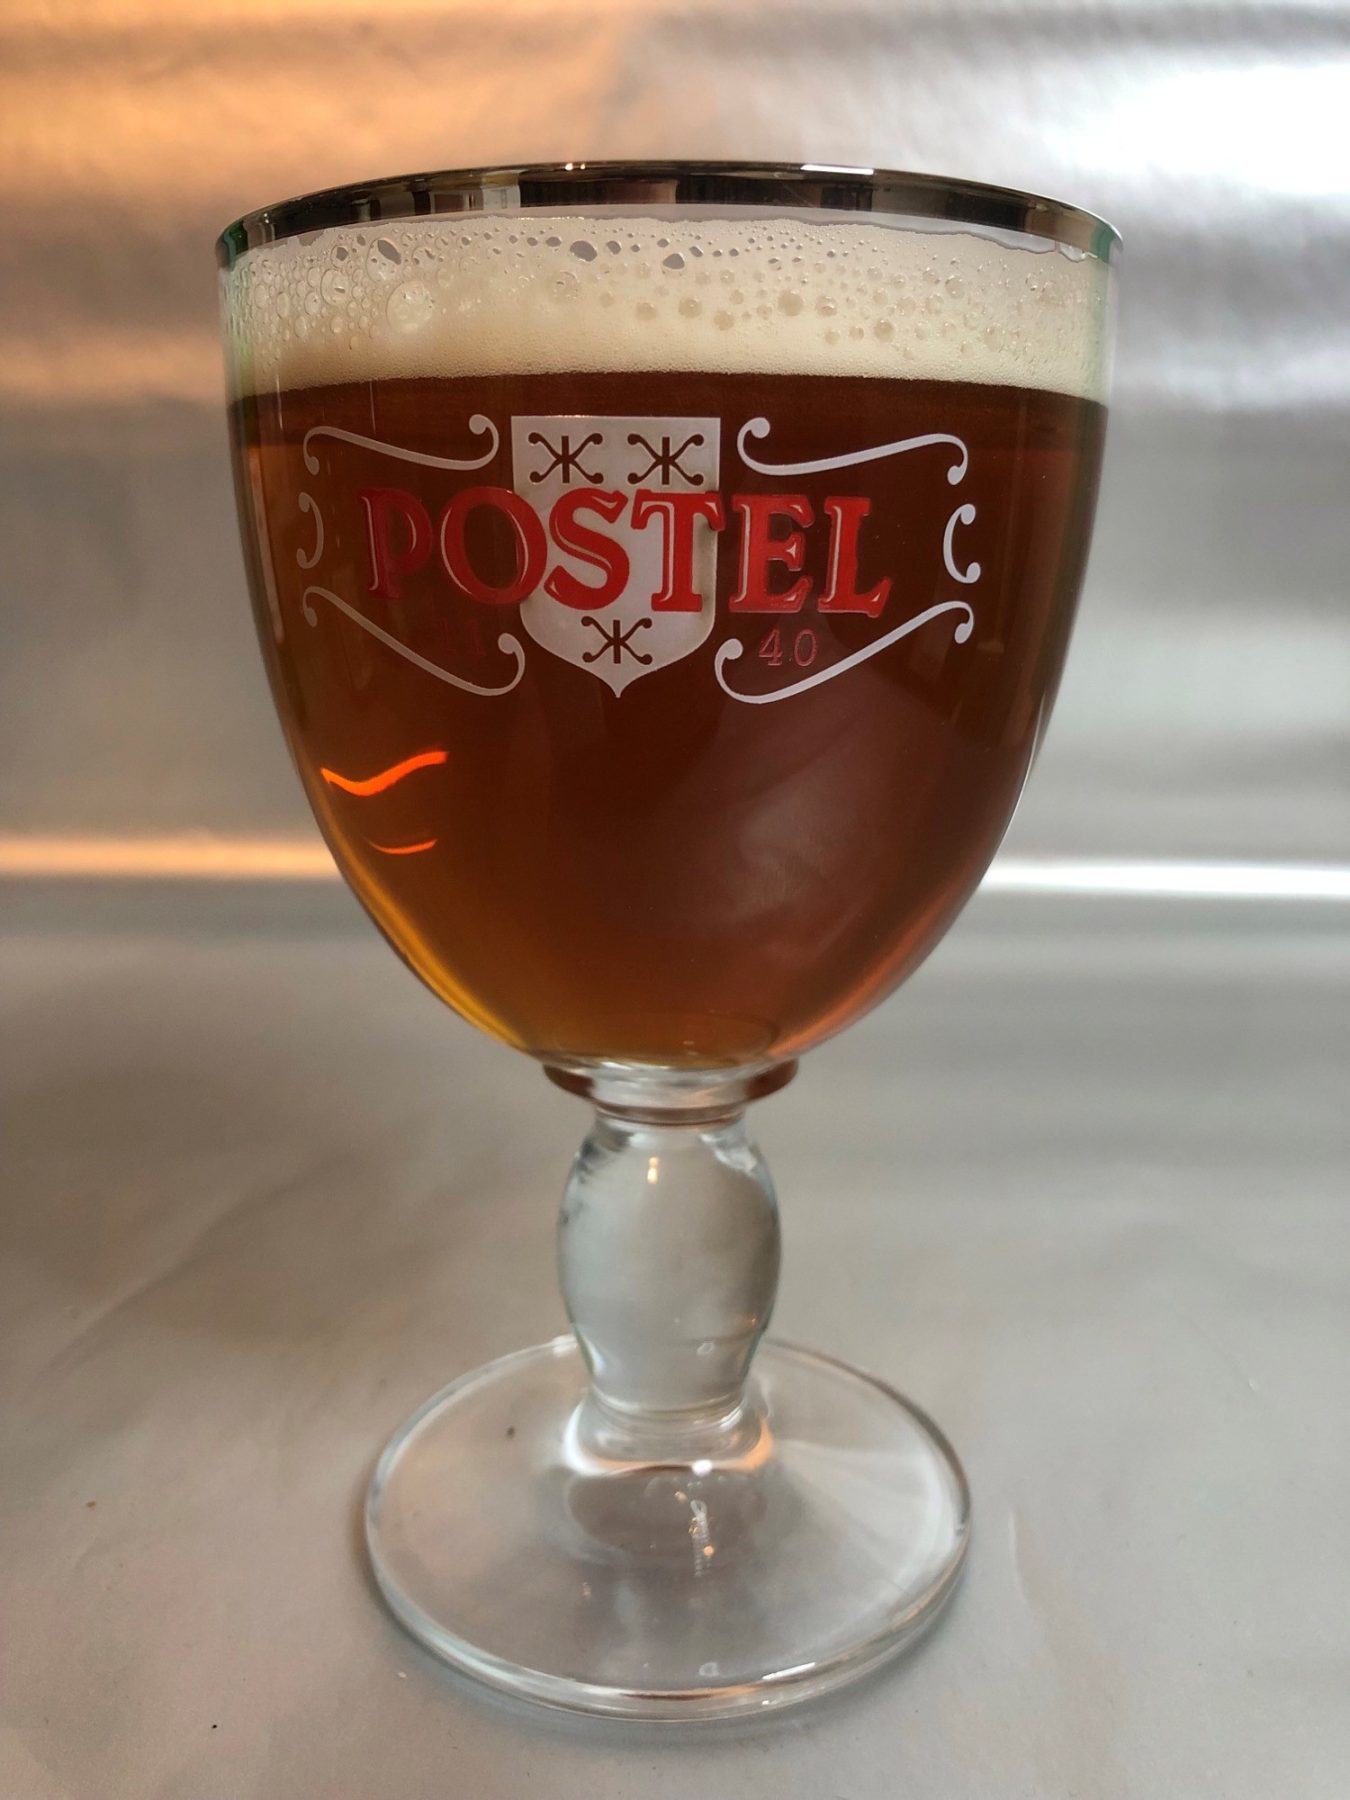 Postel beer glass